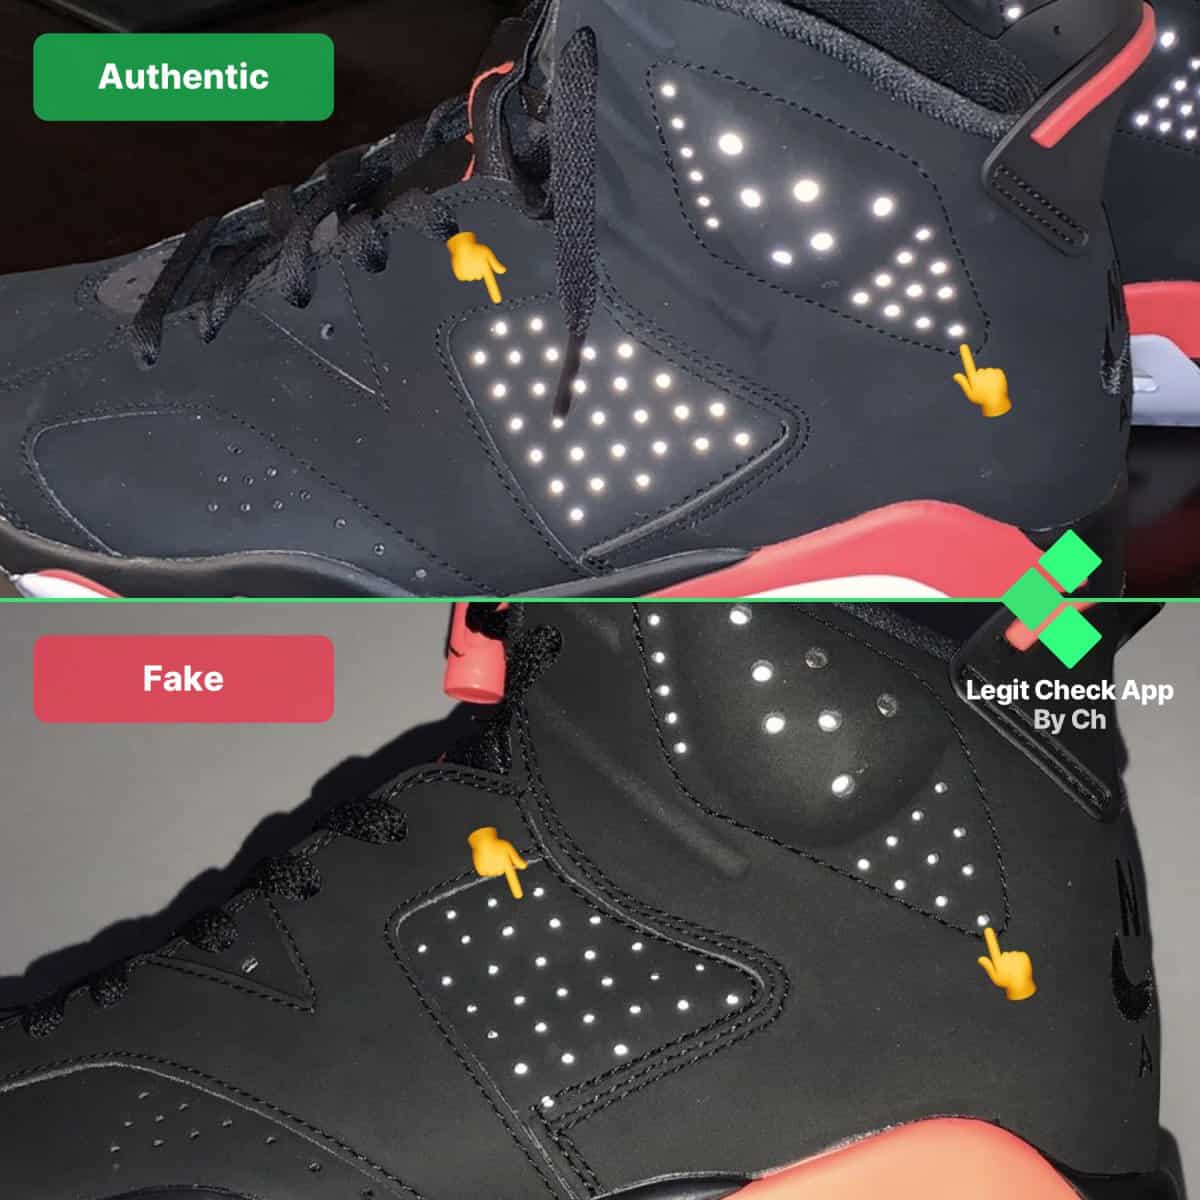 Air Jordan 6 fake vs real guide